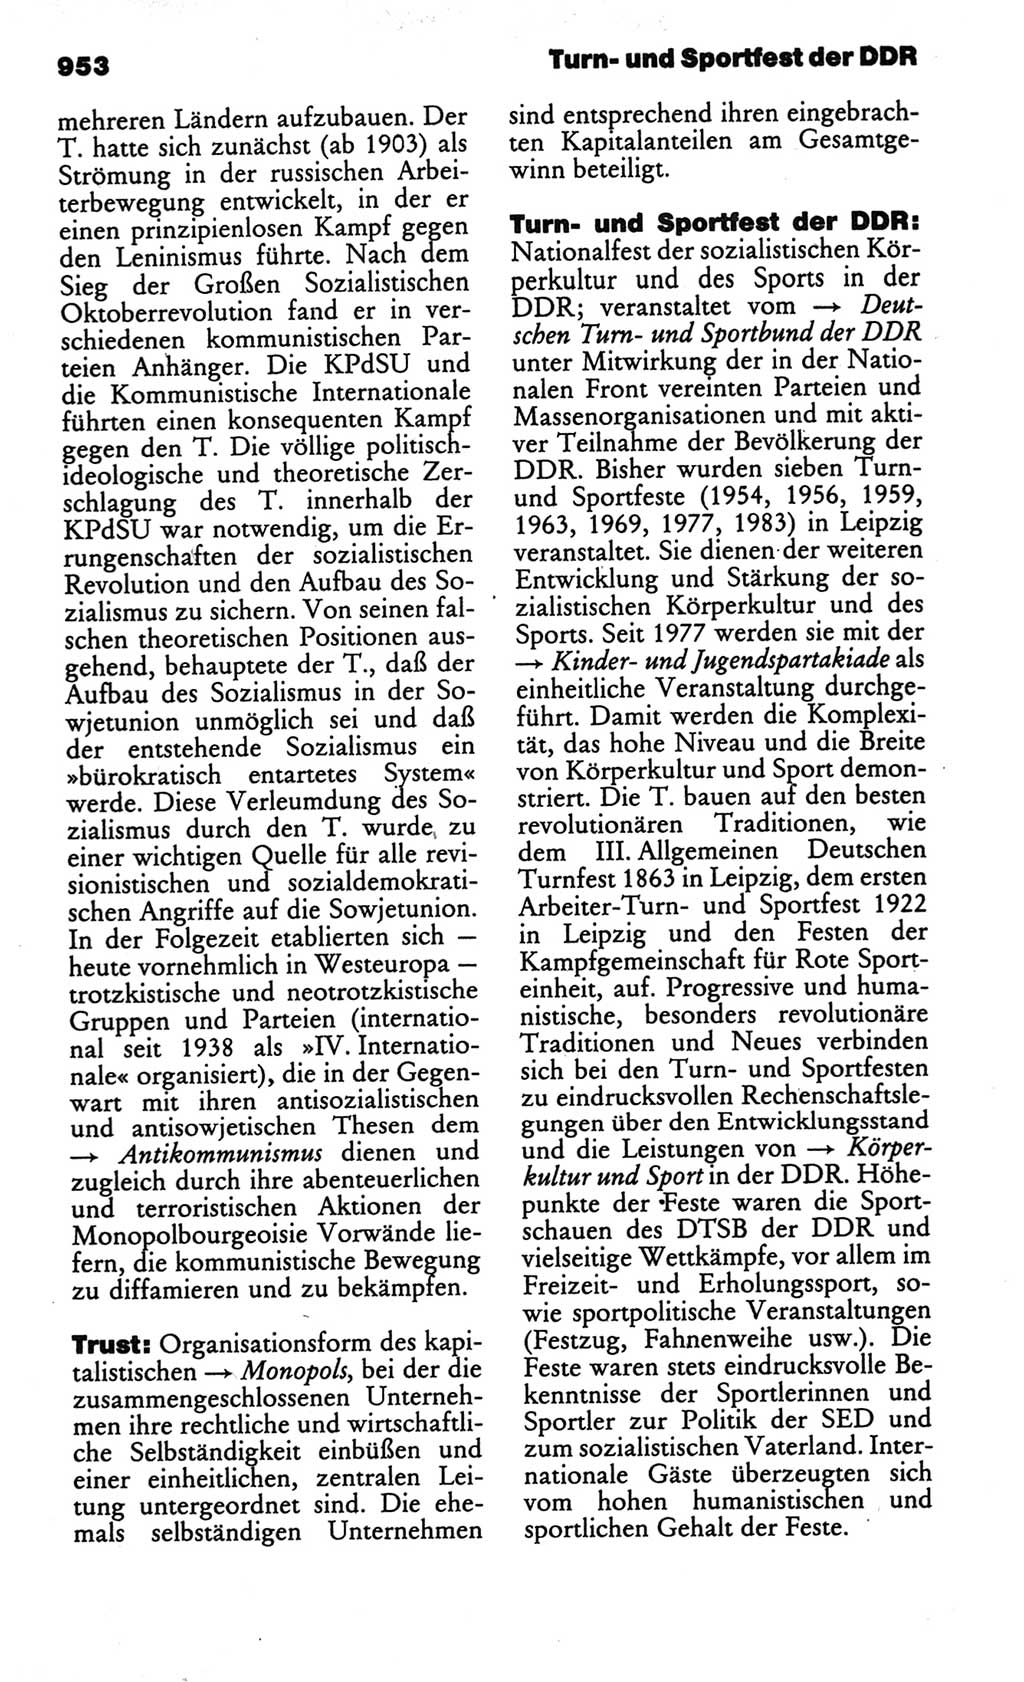 Kleines politisches Wörterbuch [Deutsche Demokratische Republik (DDR)] 1986, Seite 953 (Kl. pol. Wb. DDR 1986, S. 953)